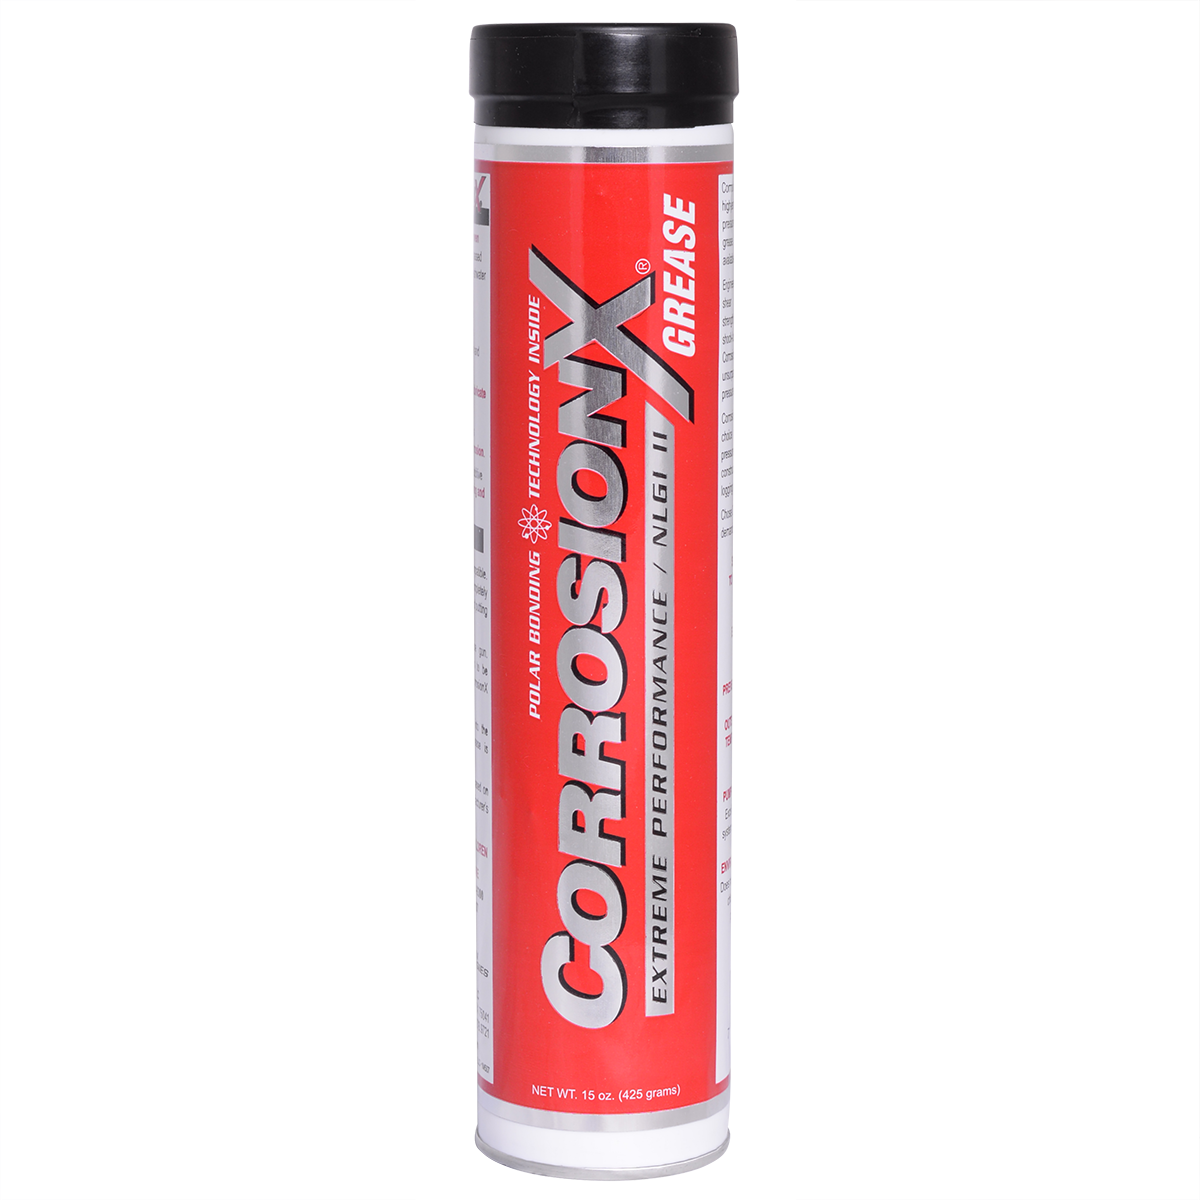 CorrosionX Grease